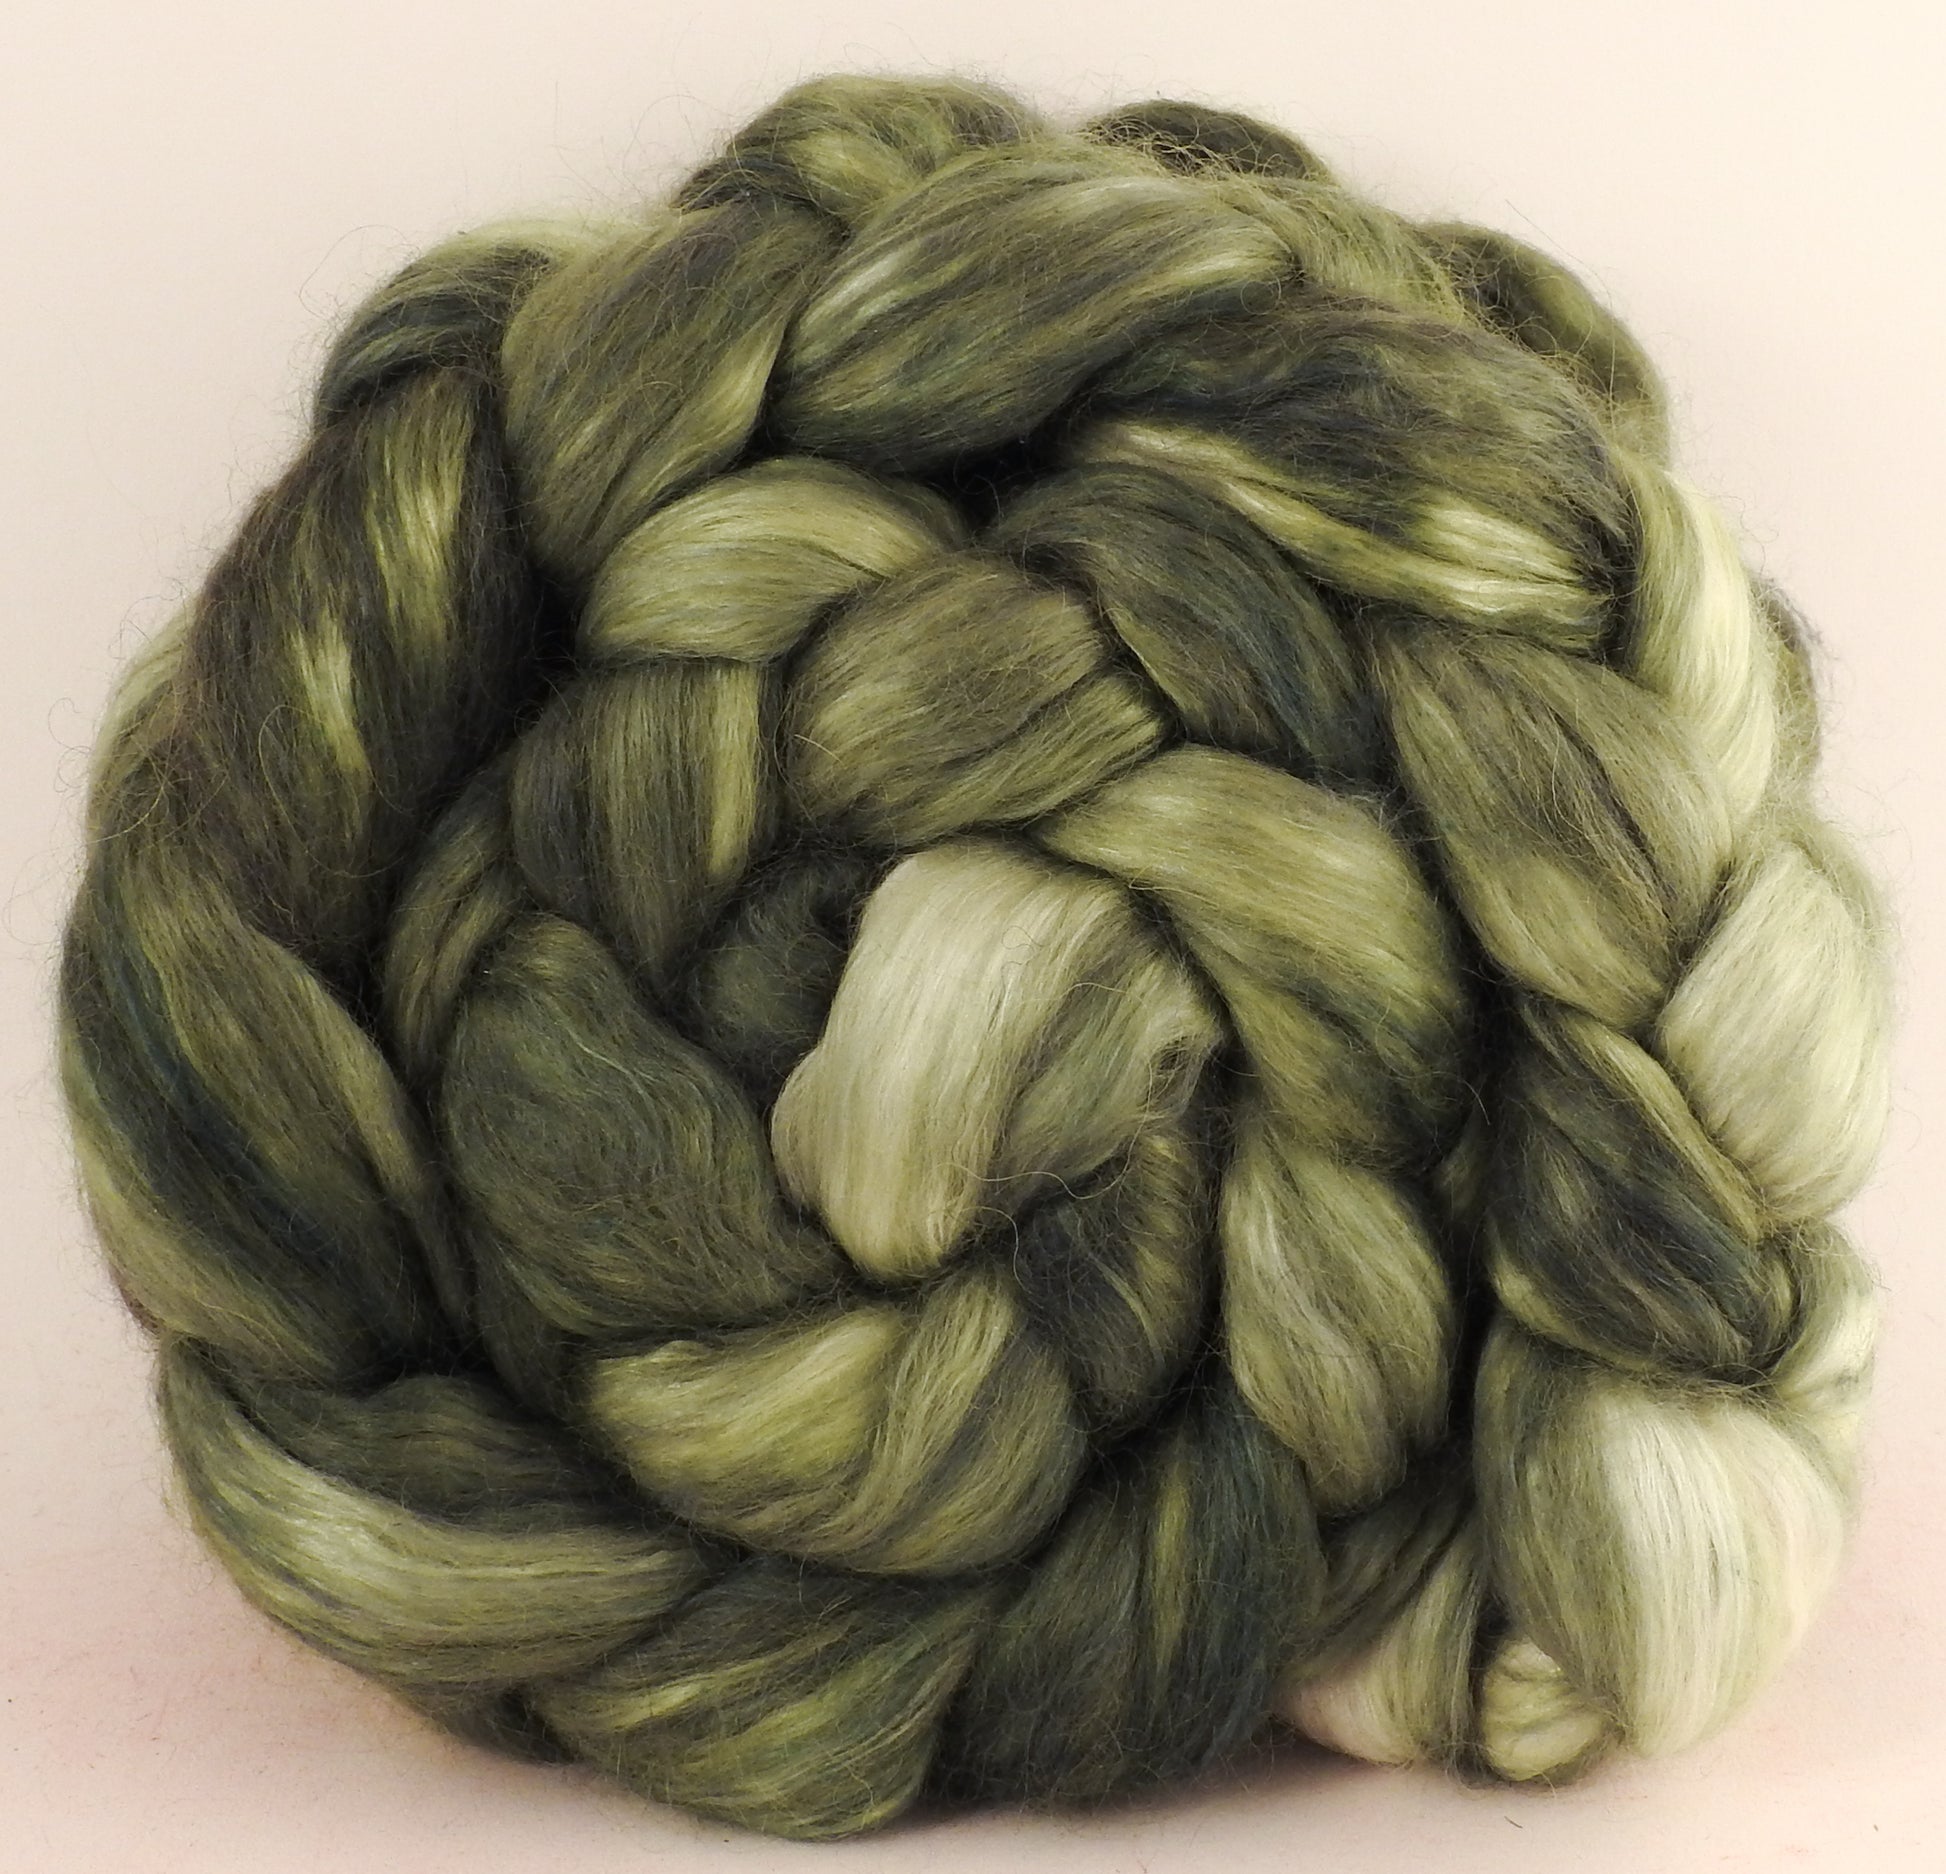 Hand-dyed wensleydale/ mulberry silk roving (65/35) - Lichen (5.7 oz) - Inglenook Fibers